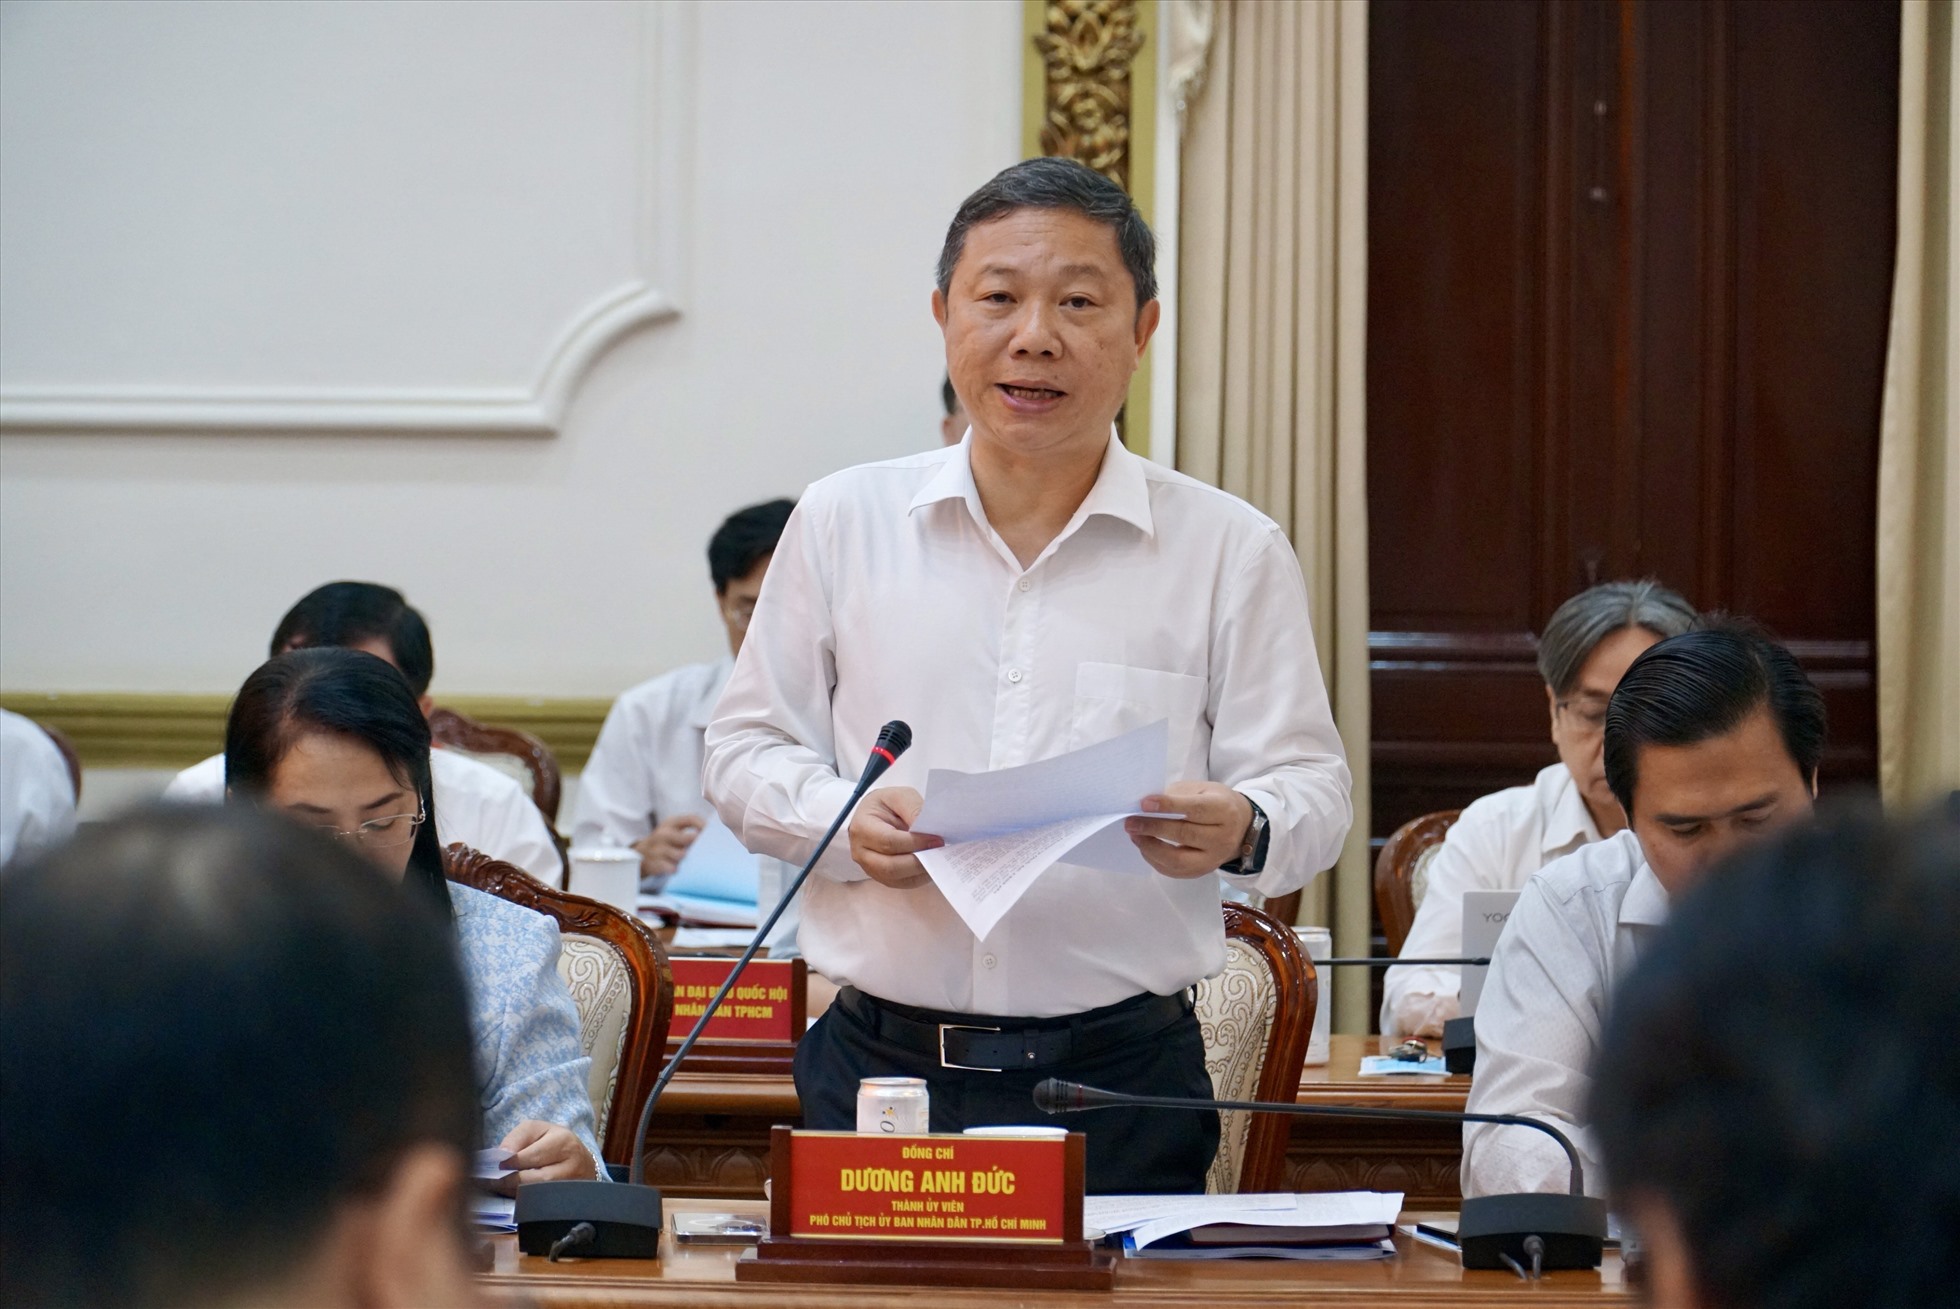 Phó Chủ tịch UBND TP Hồ Chí Minh Dương Anh Đức báo cáo đoàn giám sát. Ảnh: Tuệ Nhi